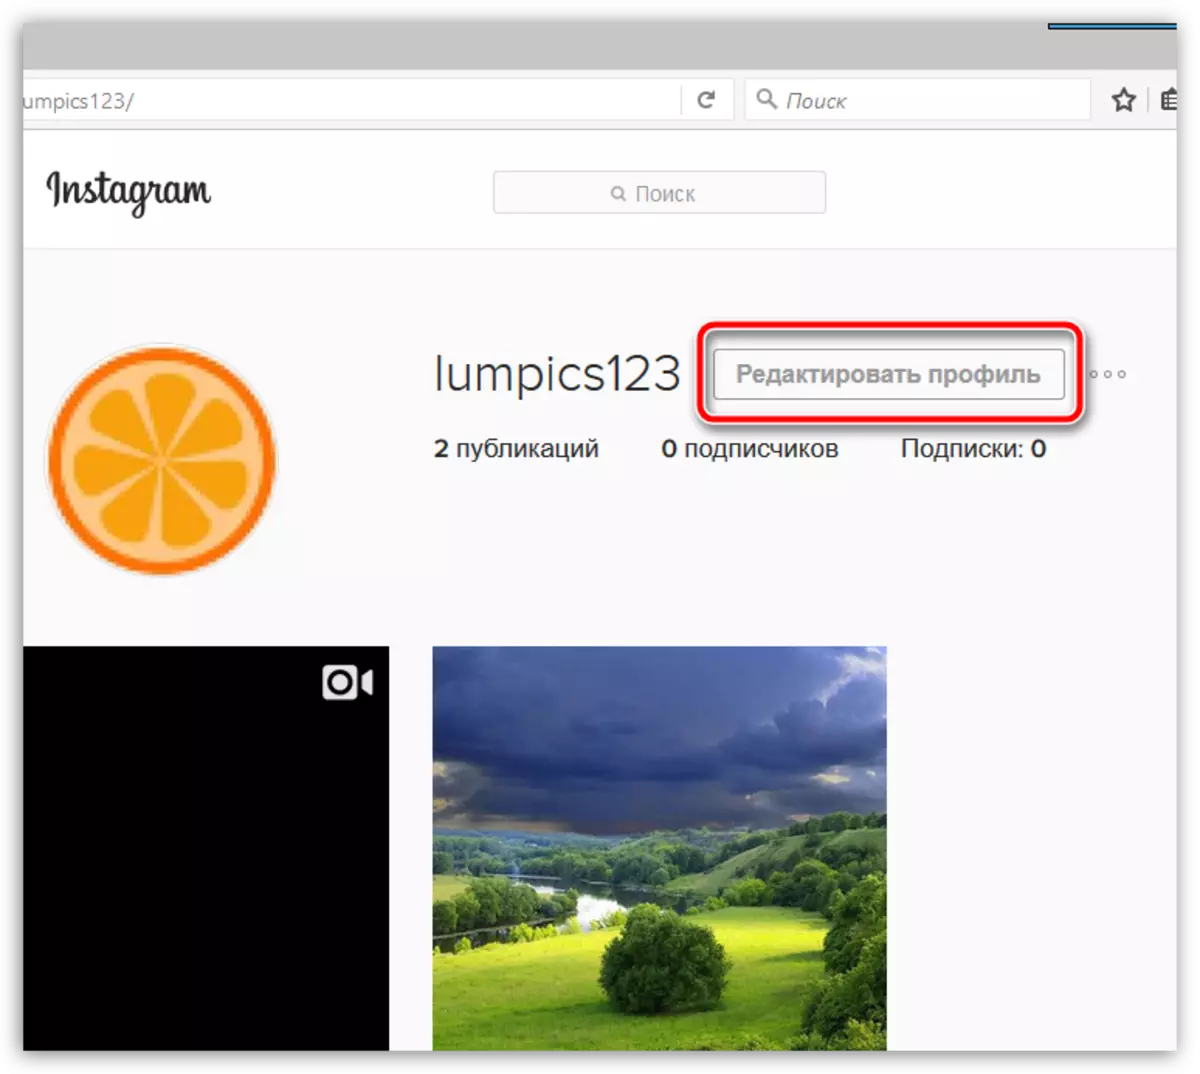 Profil bearbeiten in der Instagram-Webversion